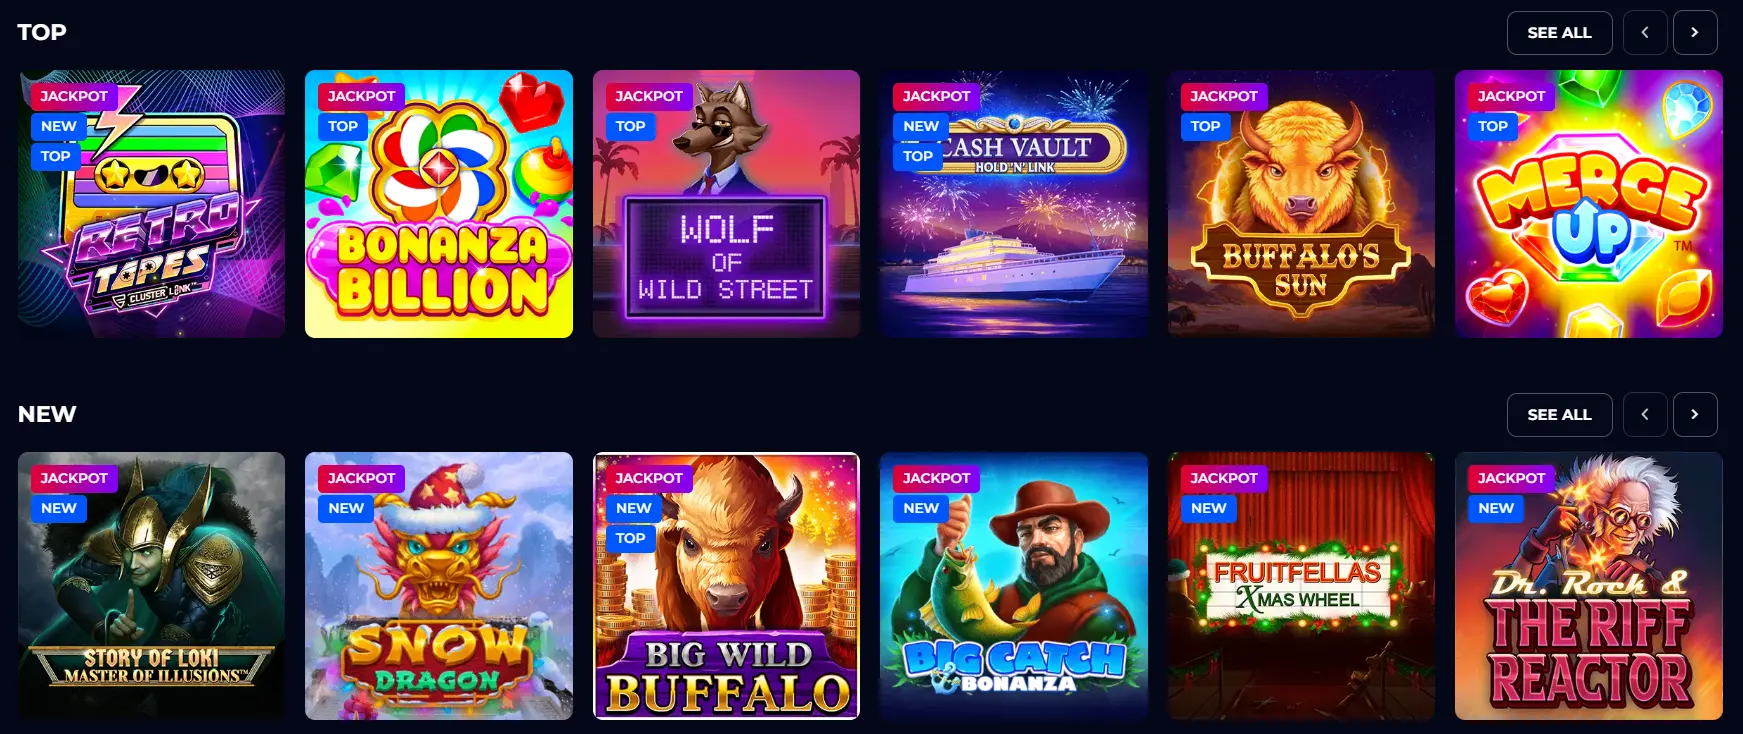 Megaslot casino top and new games